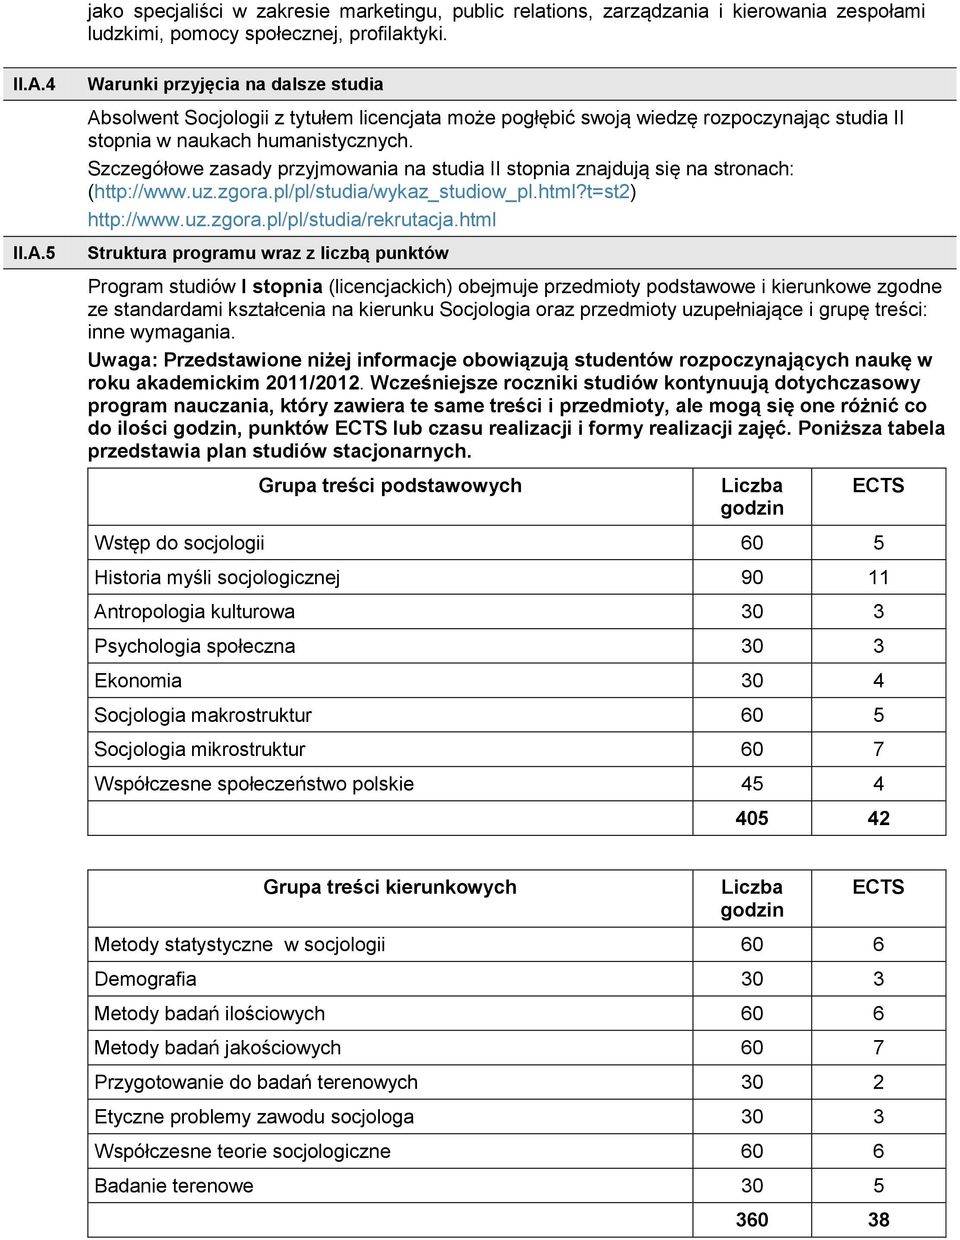 Szczegółowe zasady przyjmowania na studia II stopnia znajdują się na stronach: (http://www.uz.zgora.pl/pl/studia/wykaz_studiow_pl.html?t=st) http://www.uz.zgora.pl/pl/studia/rekrutacja.